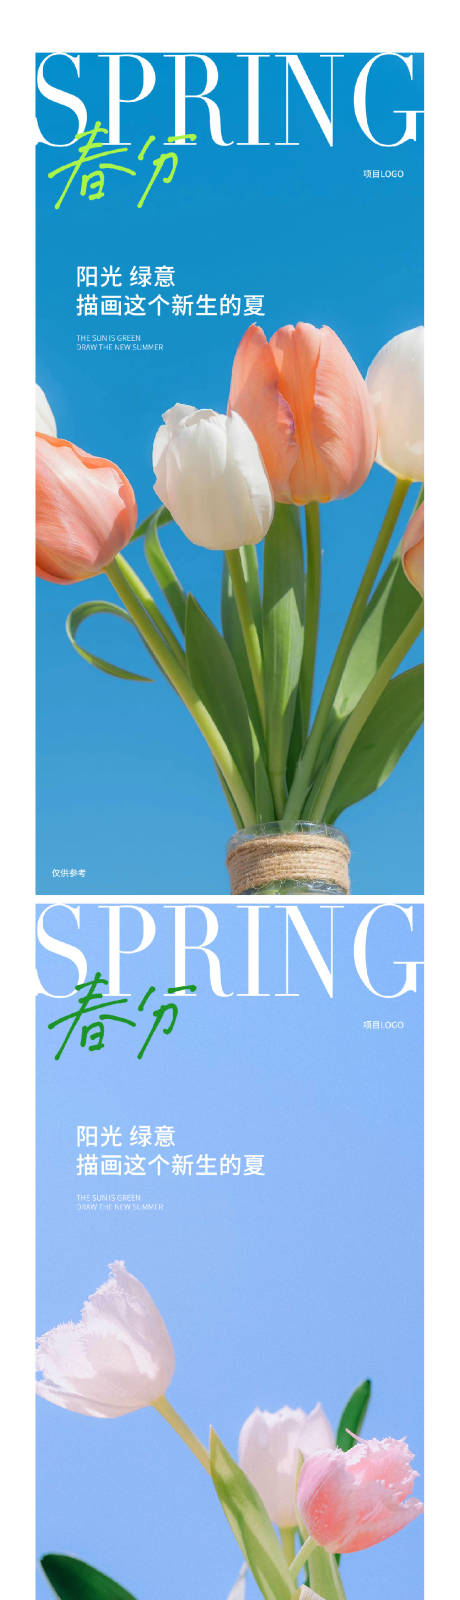 春分节气系列海报